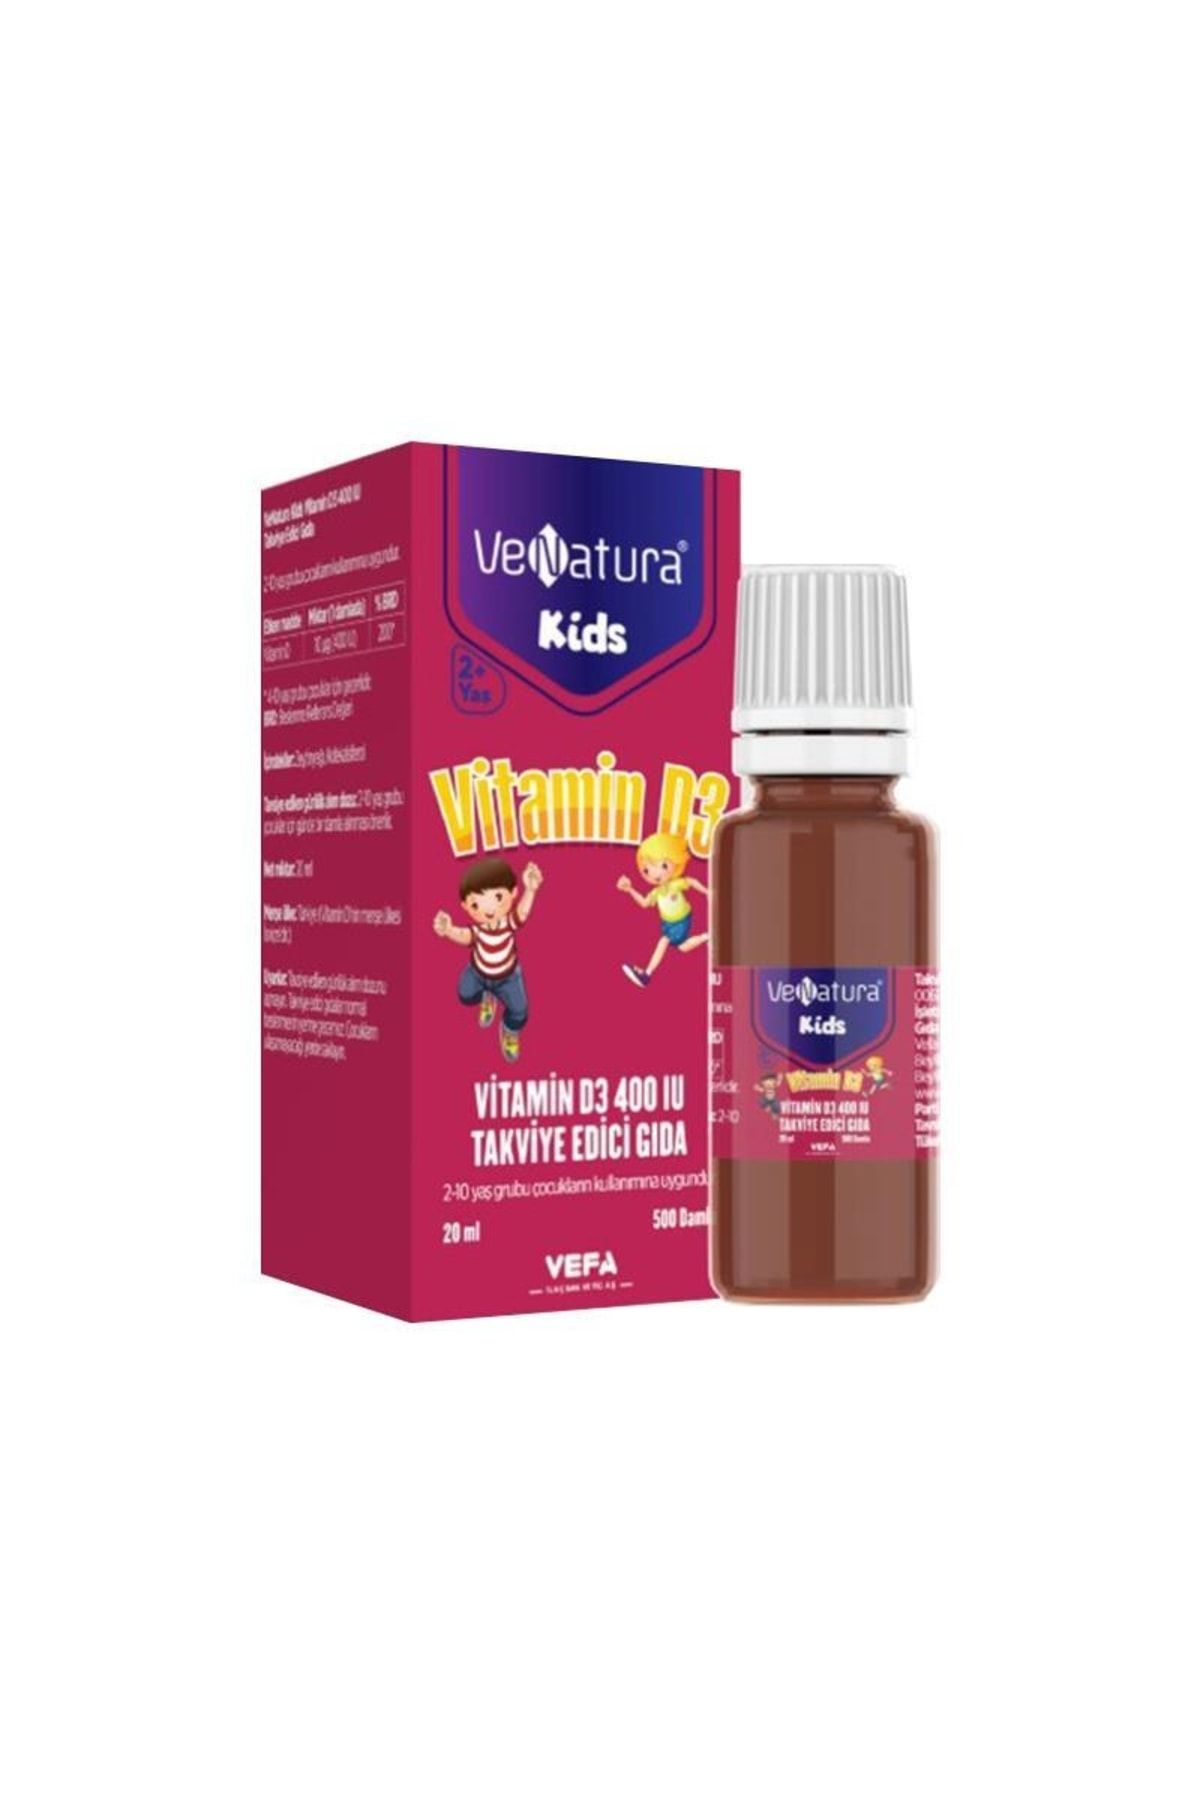 Venatura Kids Vitamin D3 400'lü Takviye Edici Gıda 20 ml